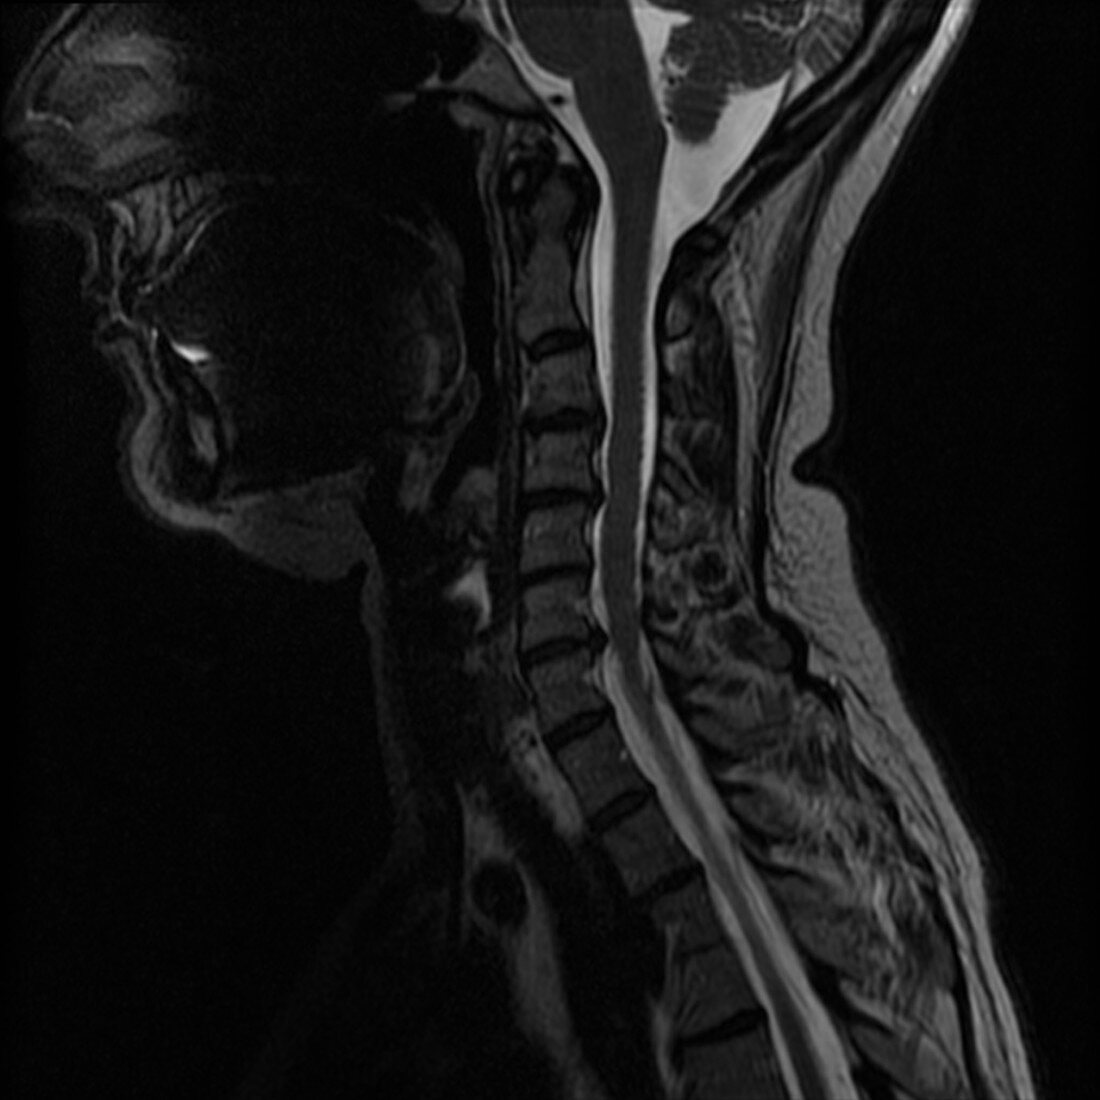 Cervical Spine Injury,MRI,Illustration